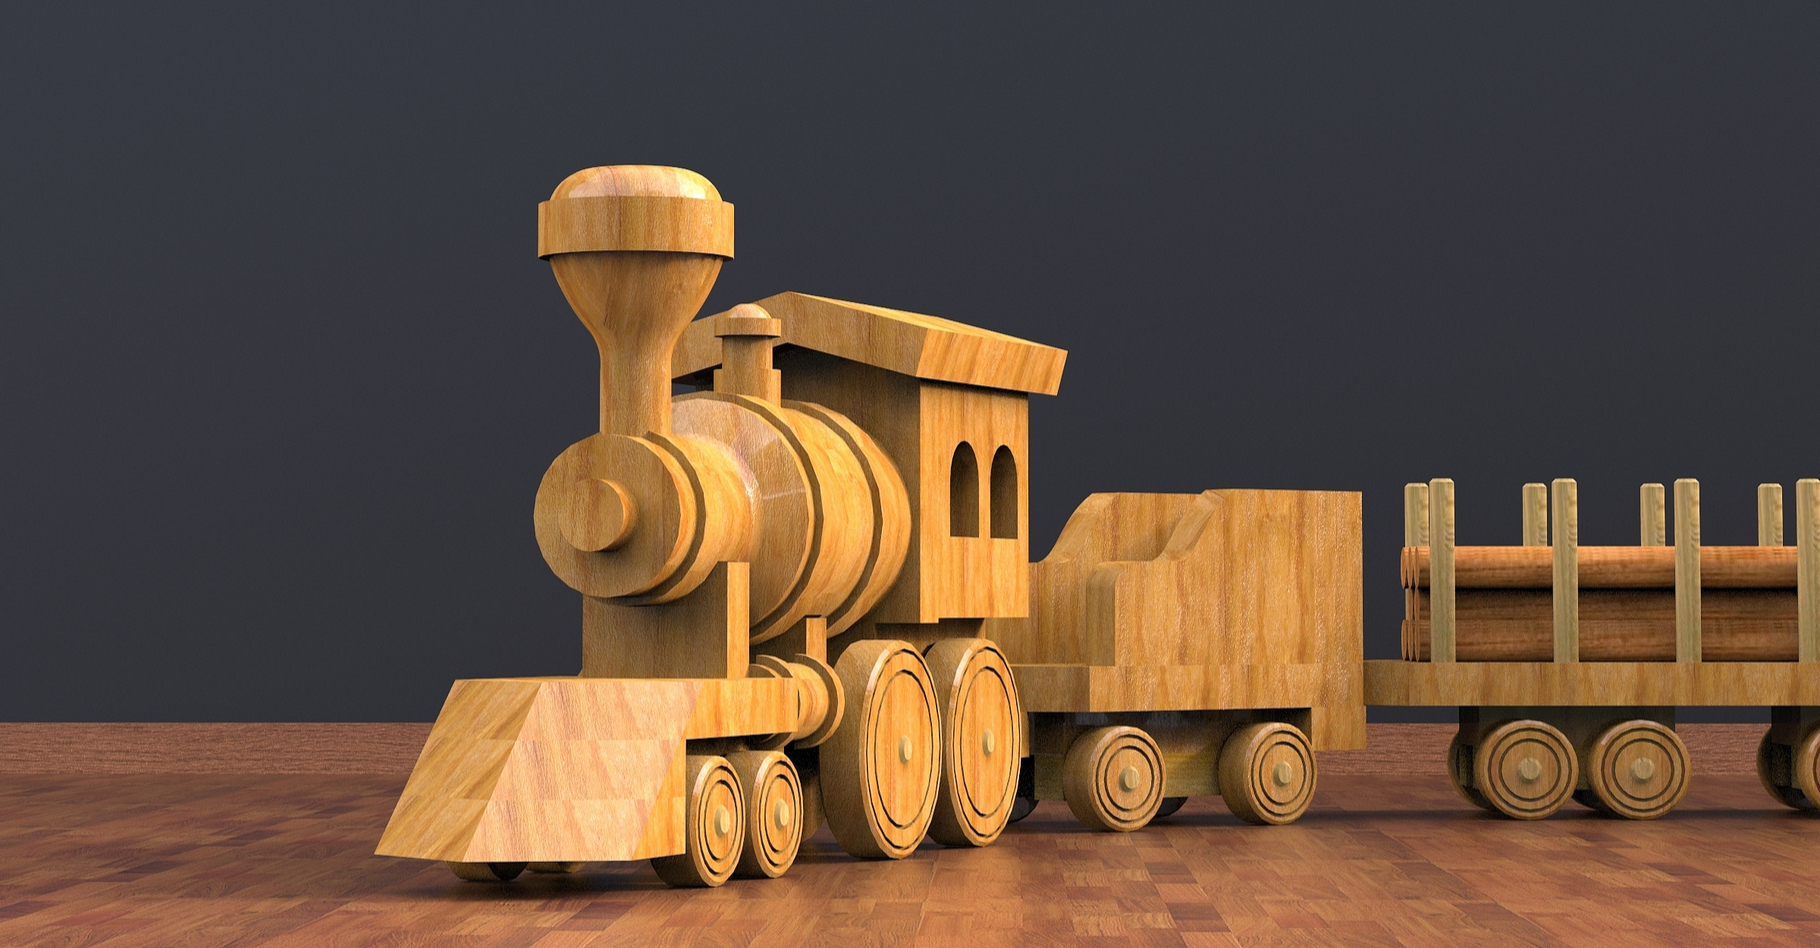 Quels cadeaux écologiques offrir ? Un train en bois peut être une bonne idée mais il y en a plein d'autres ! © kanesuan saksangvirat, Shutterstock